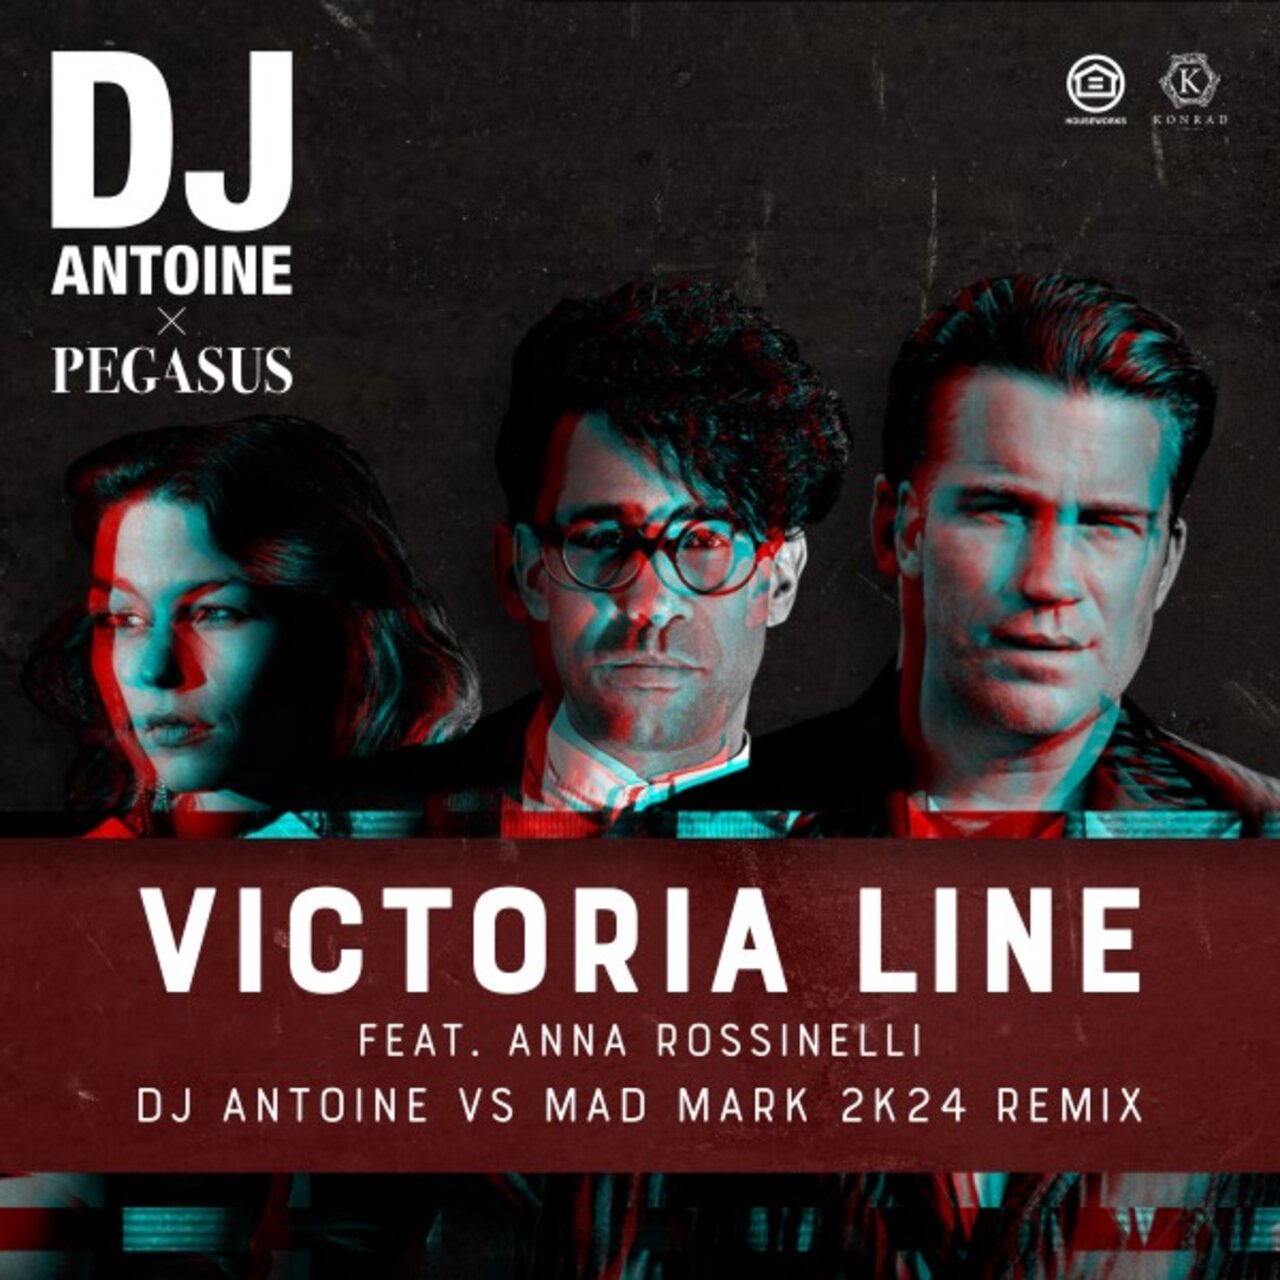 DJ Antoine x Pegasus feat. Anna Rossinelli - Victoria Line